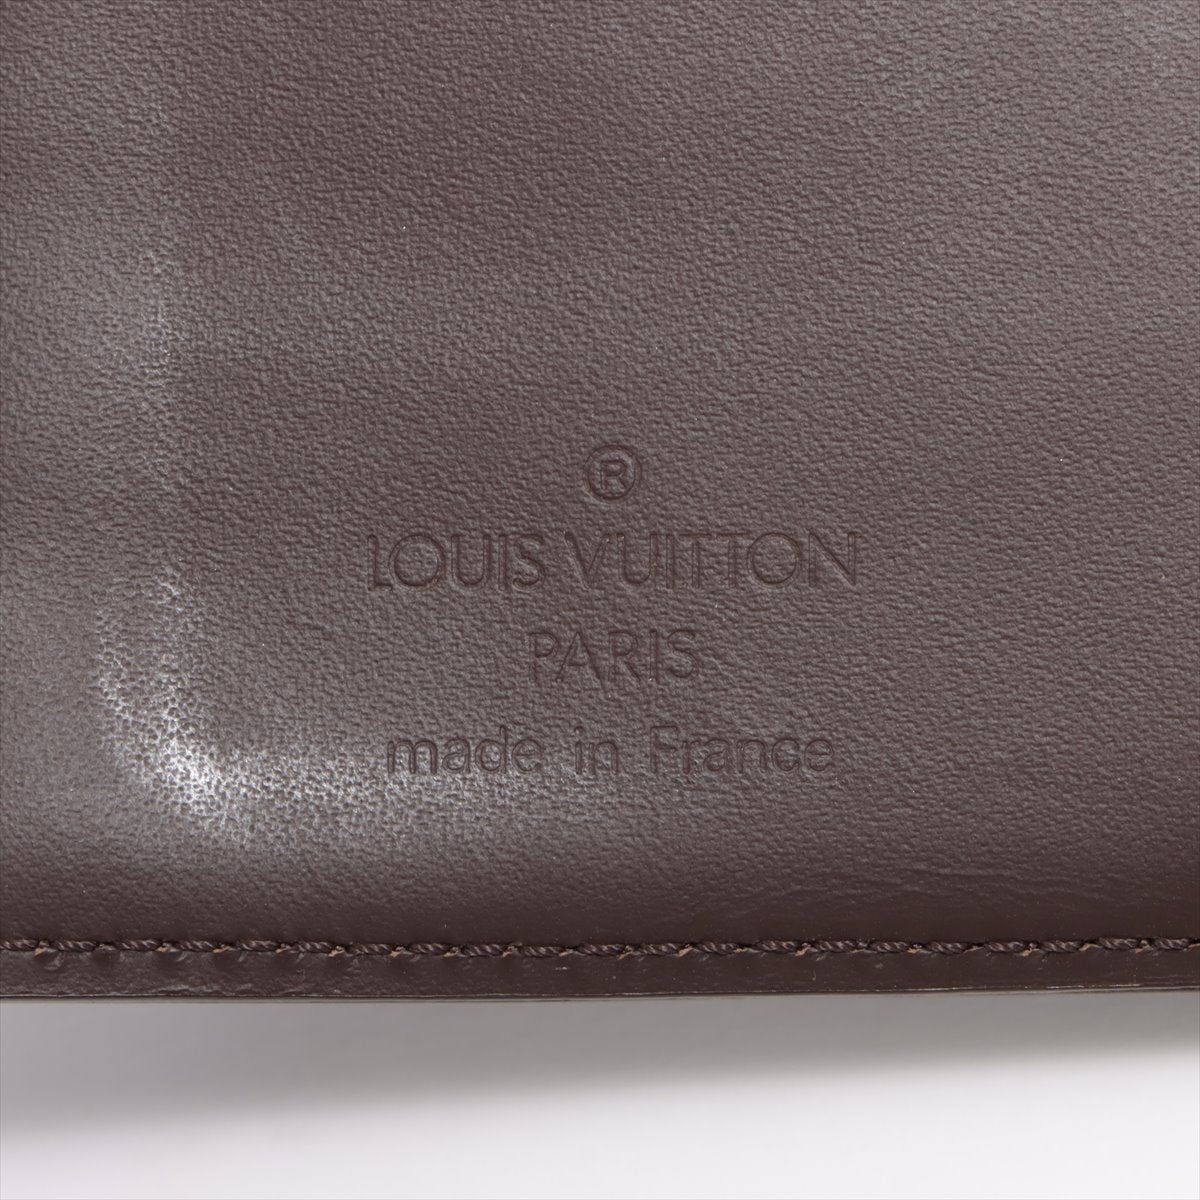 Louis Vuitton Epi Agenda PM R2009D 手冊封面 ，